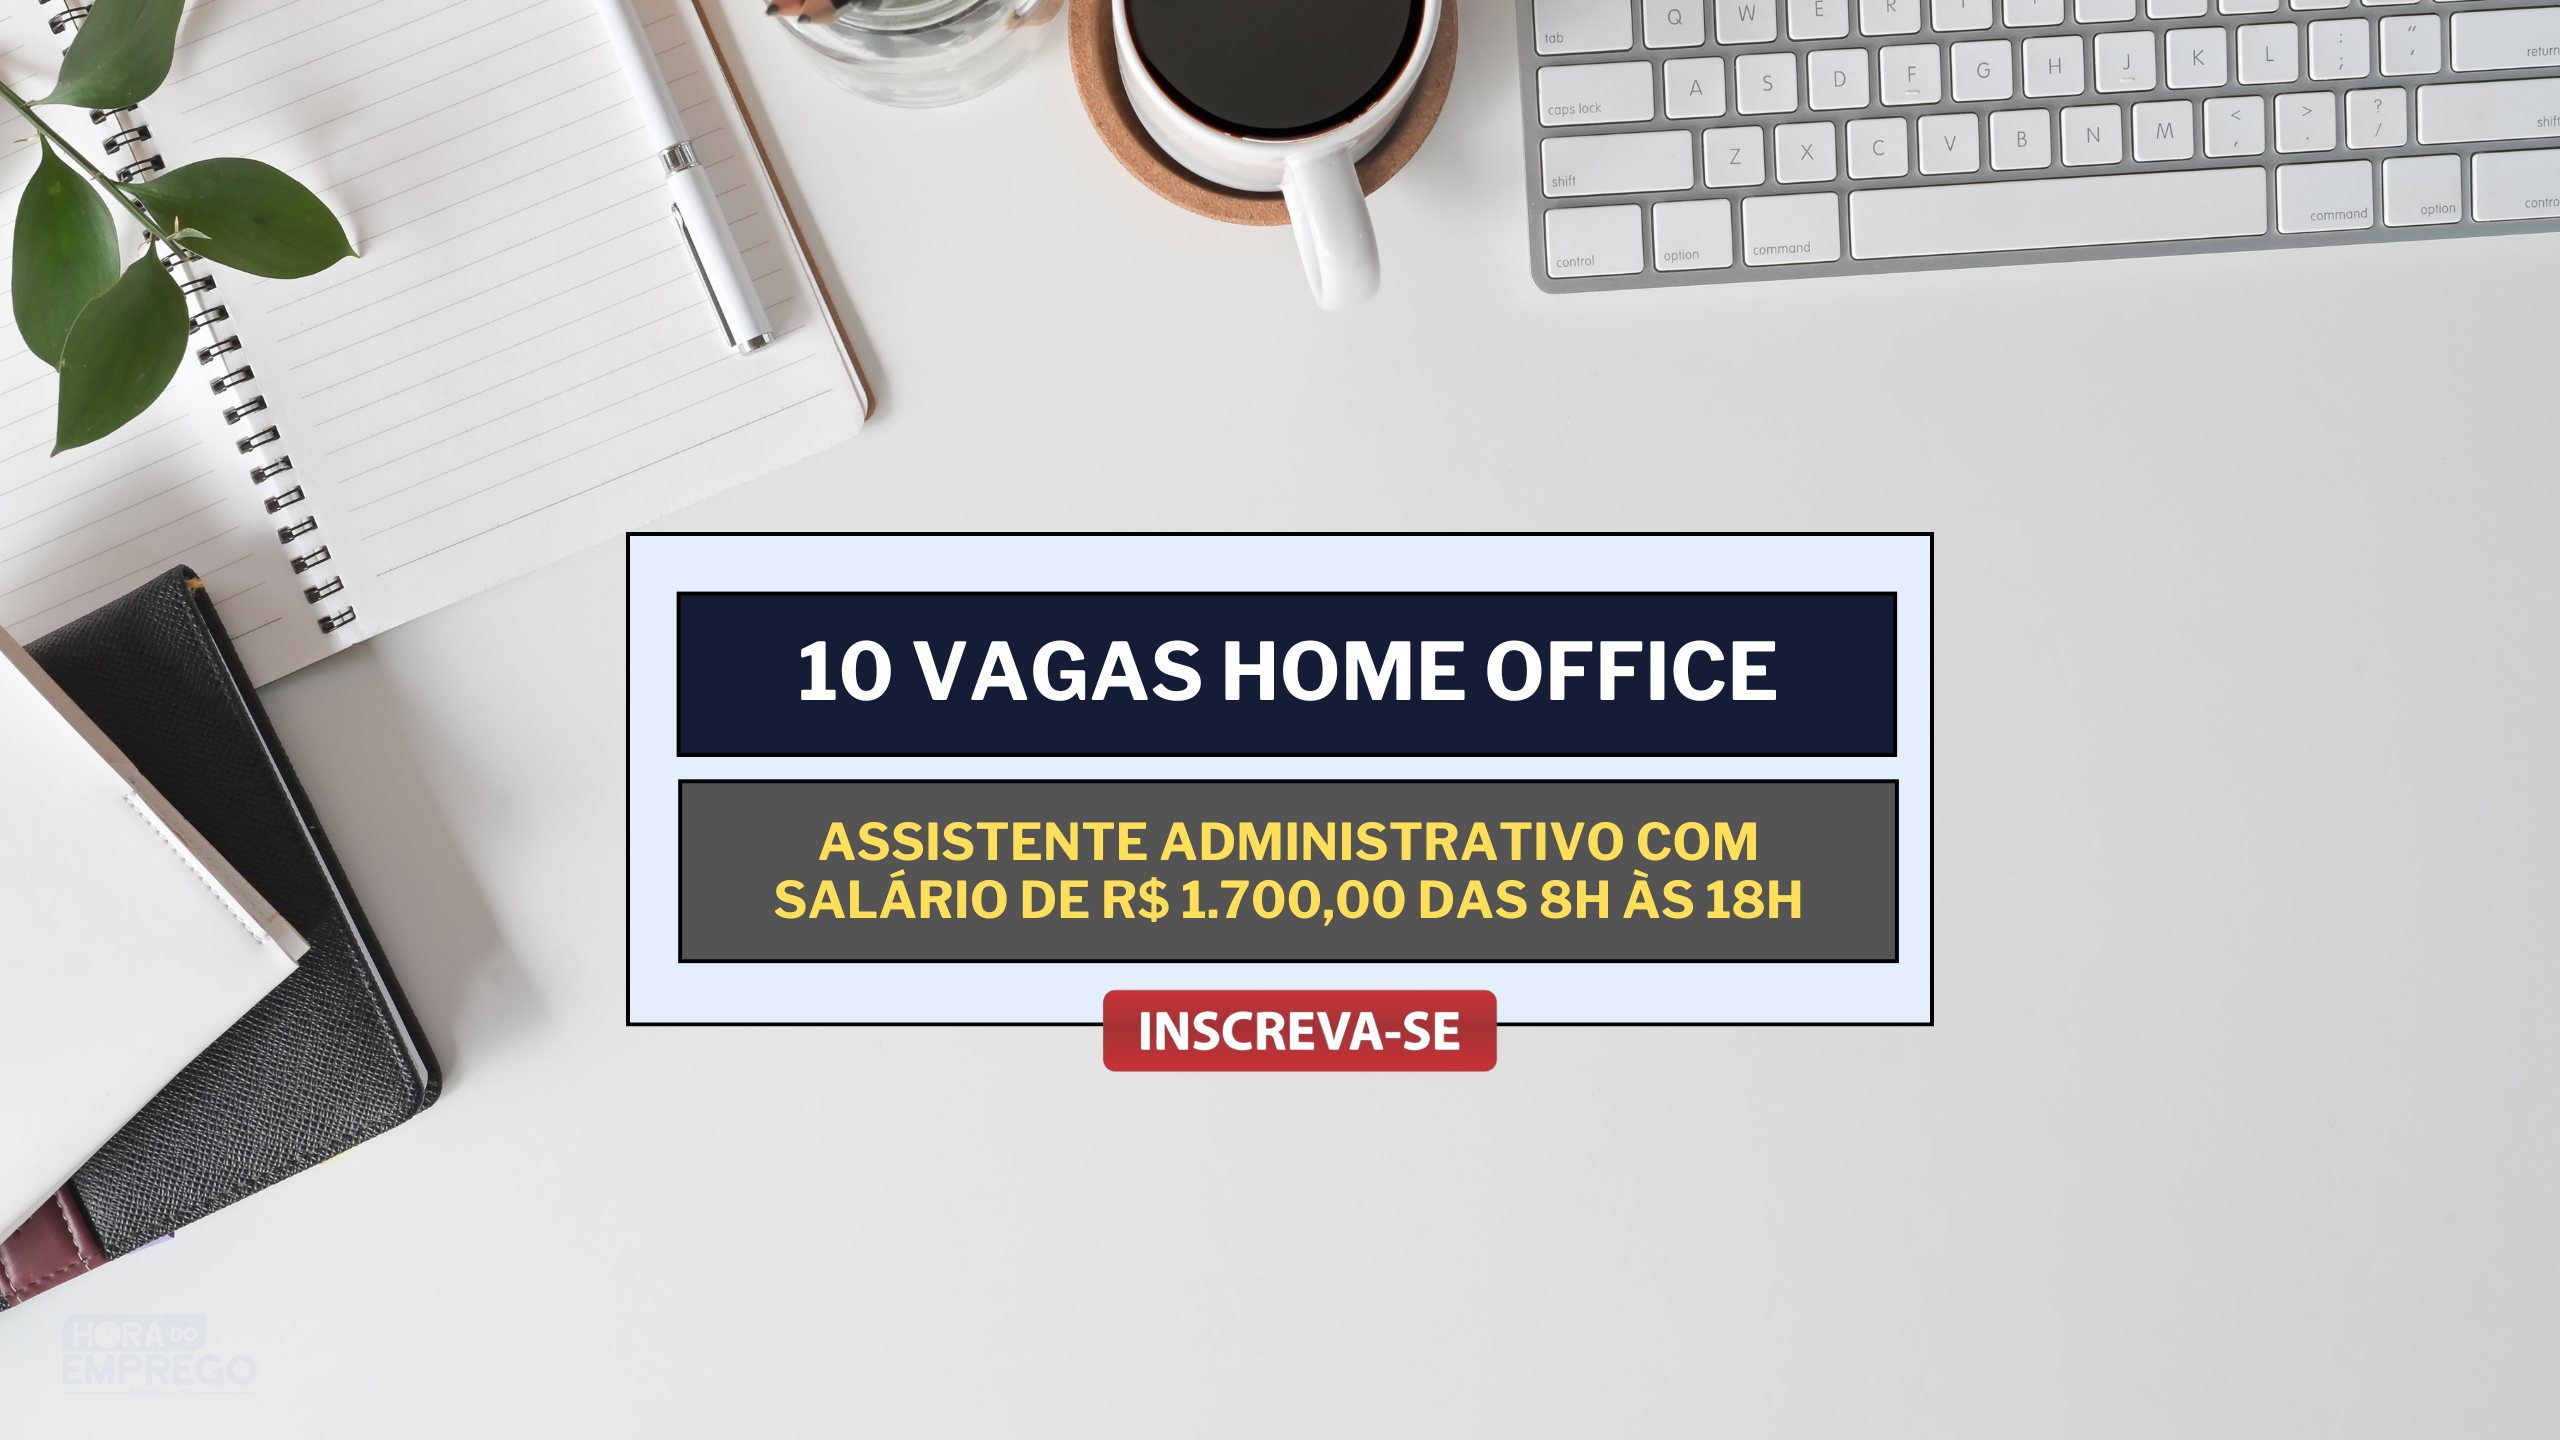 10 Vagas 100% HOME OFFICE para Assistente Administrativo com salário de R$ 1.700,00 das 8h às 18h